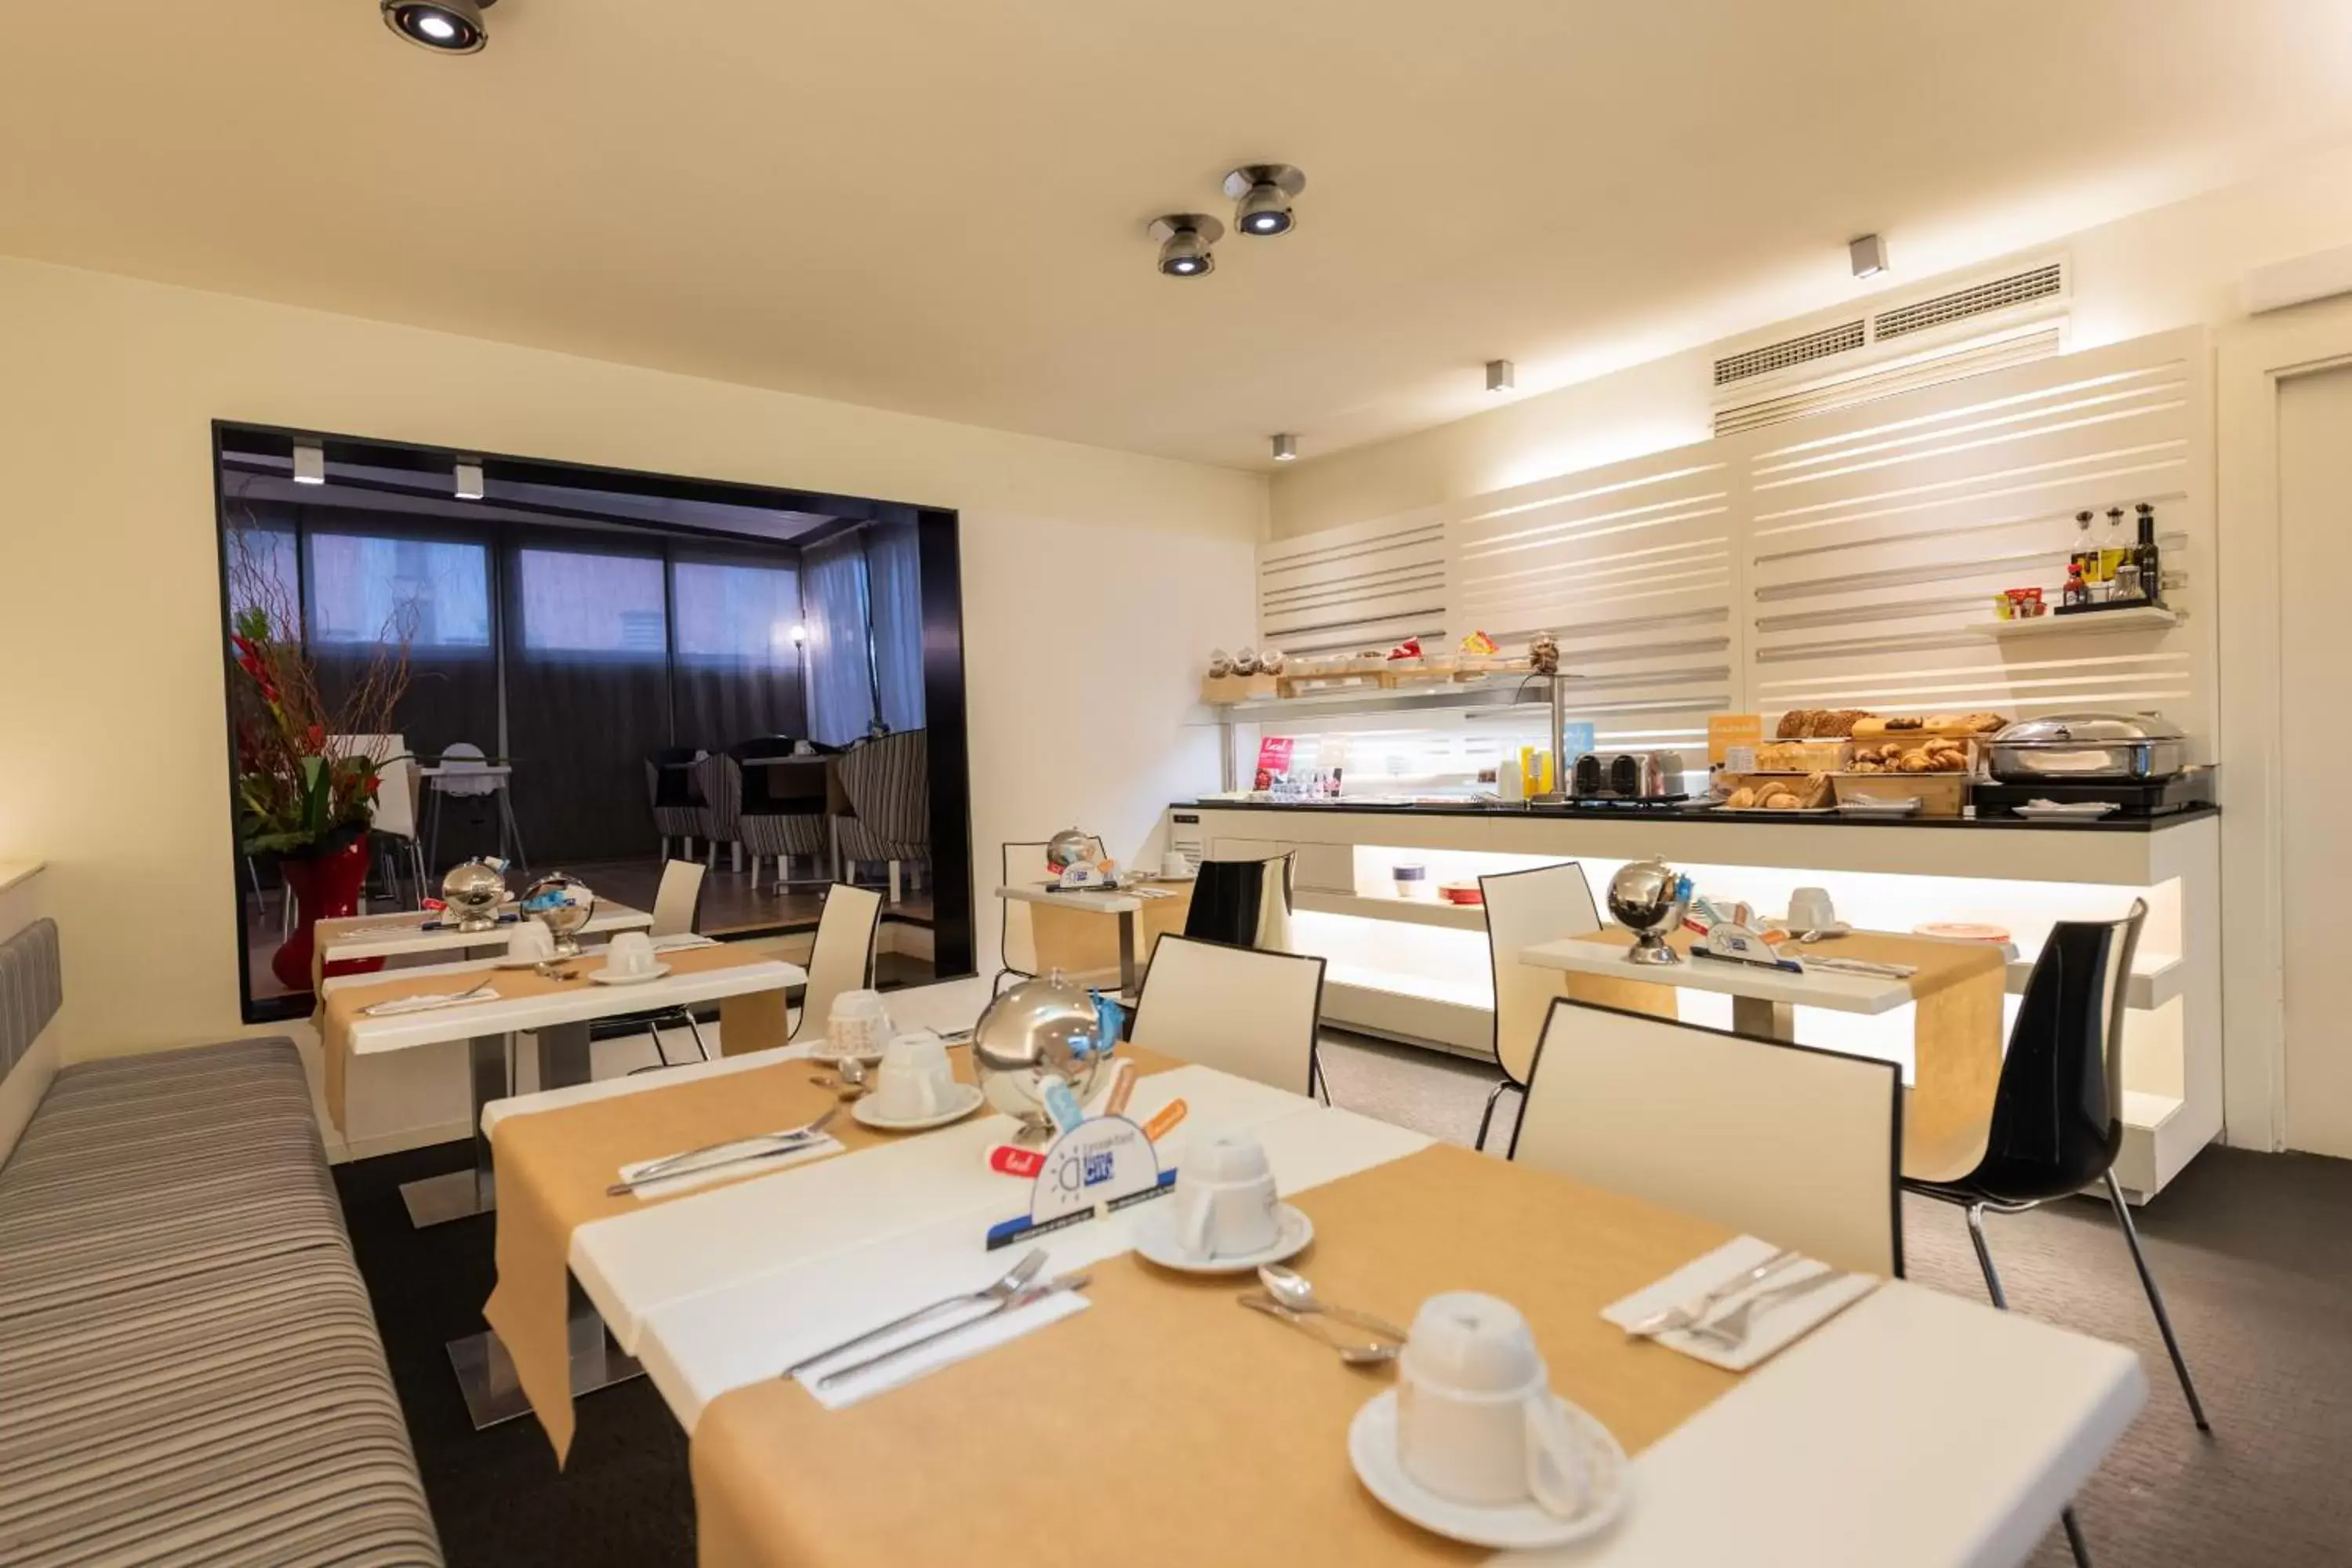 Breakfast, Restaurant/Places to Eat in Atenea Rekord Suites